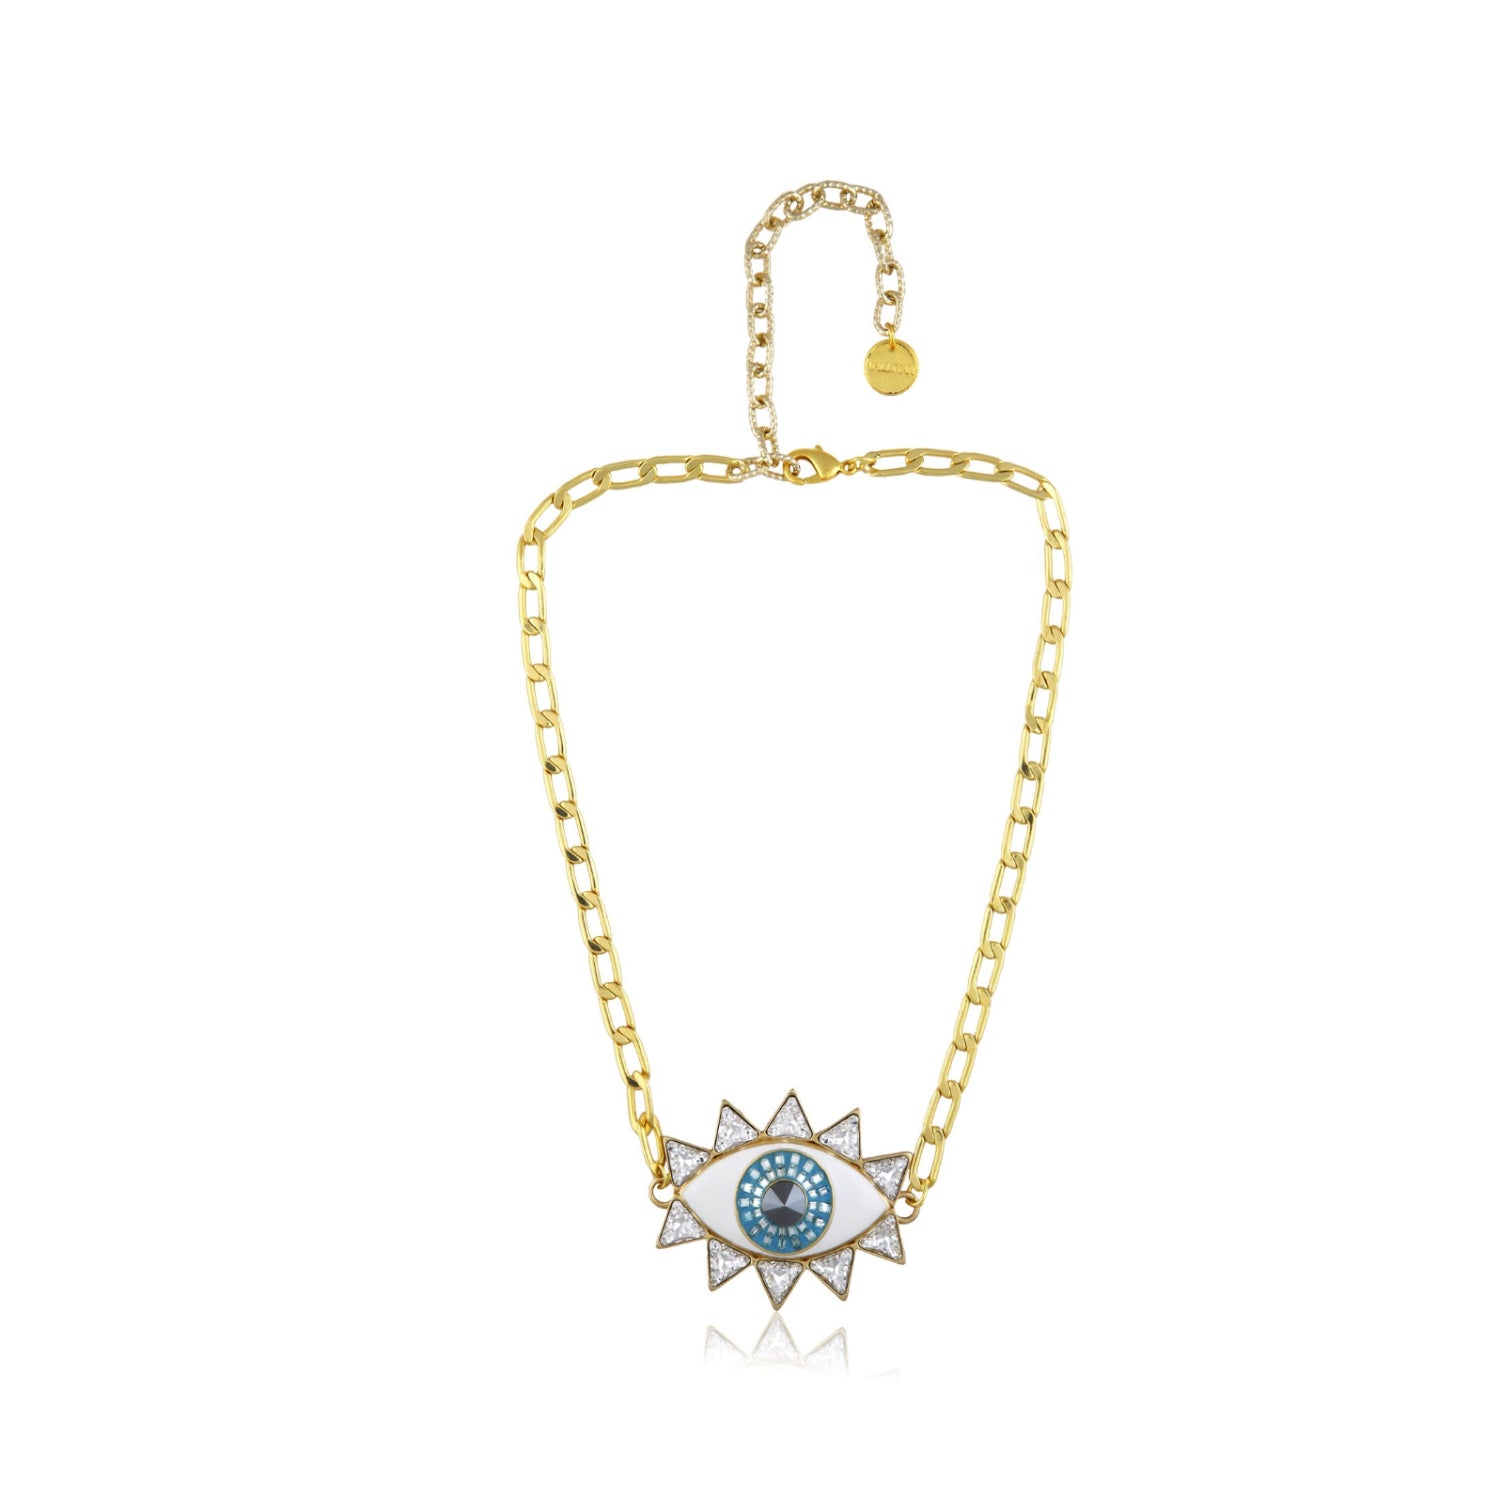 Evil Eye Necklace (Gold)